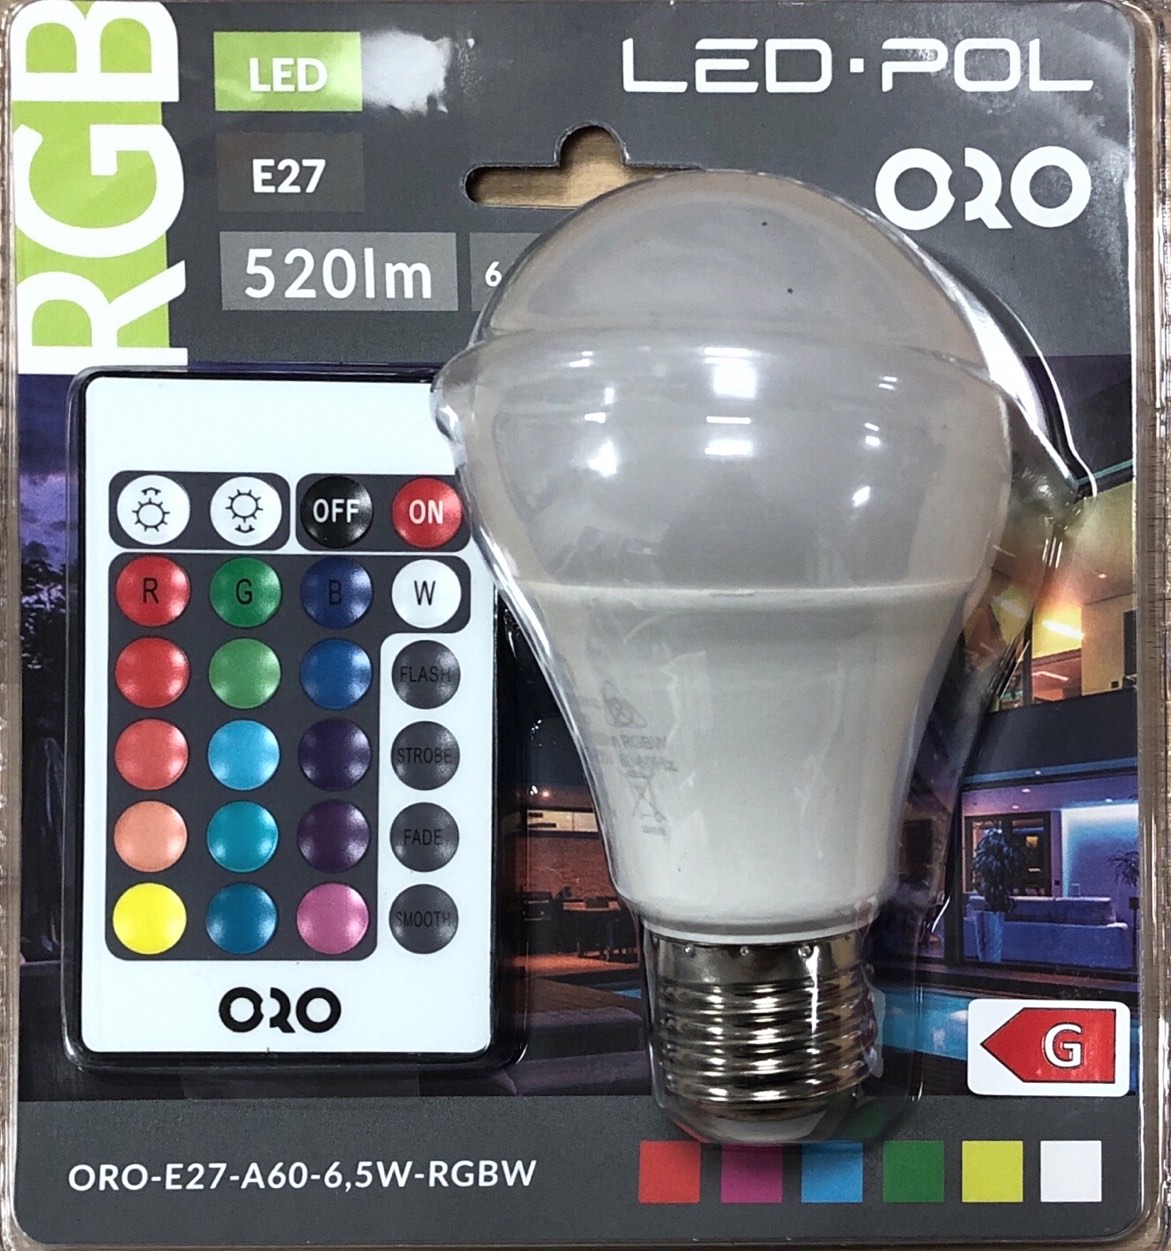 LED RGBW žárovka LED-POL 6,5W, 520lm, E27, dálkový ovladaè, ORO04112 - zvìtšit obrázek